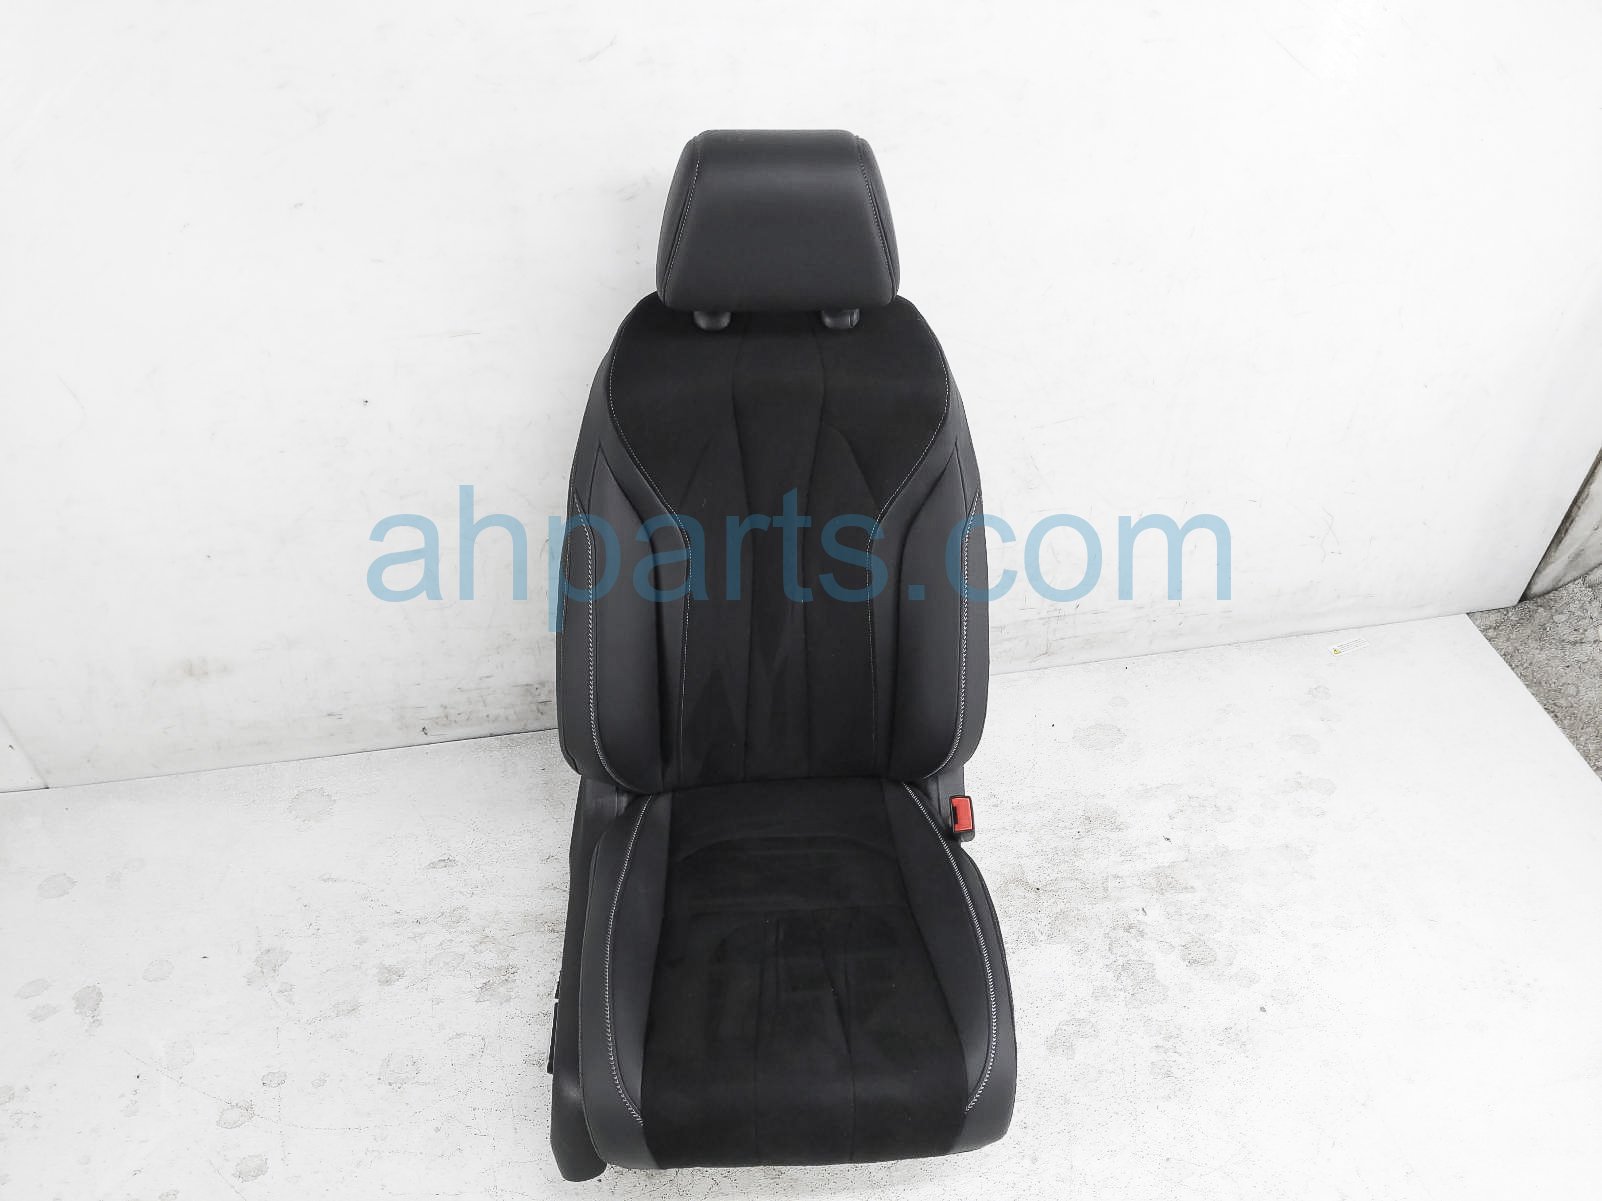 $400 Acura FR/RH SEAT - SUEDE BLACK